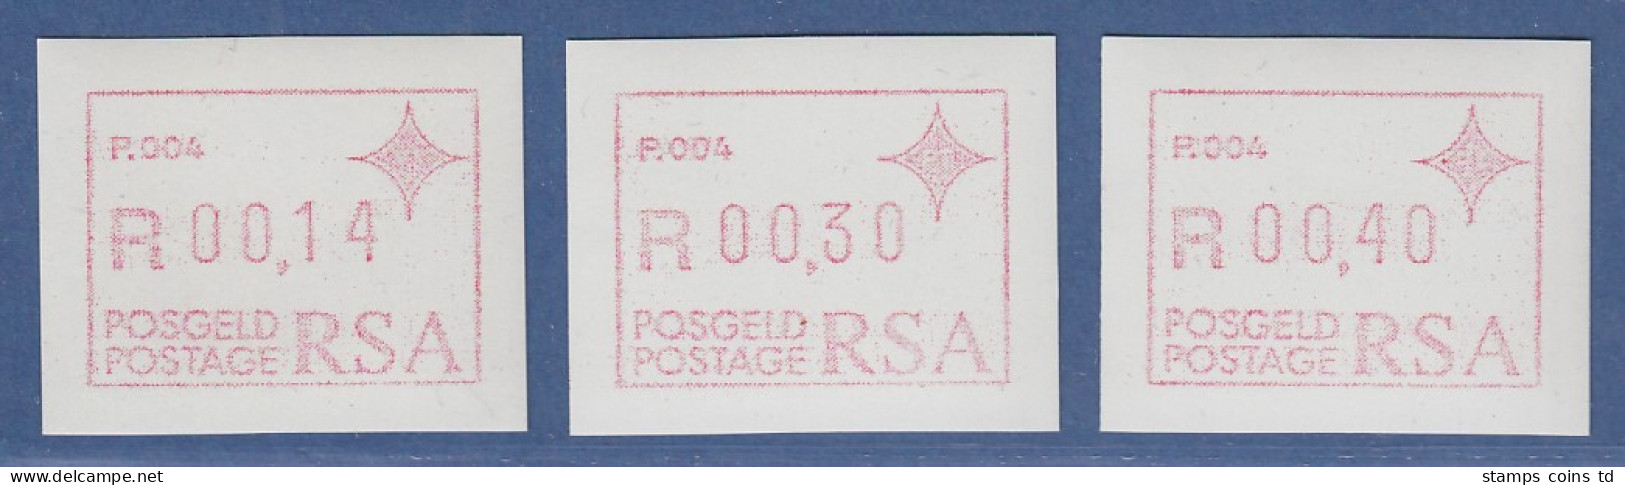 RSA Südafrika FRAMA-ATM  Aut.-Nr. P.004 Satz 14-30-40 ** (VS) - Viñetas De Franqueo (Frama)